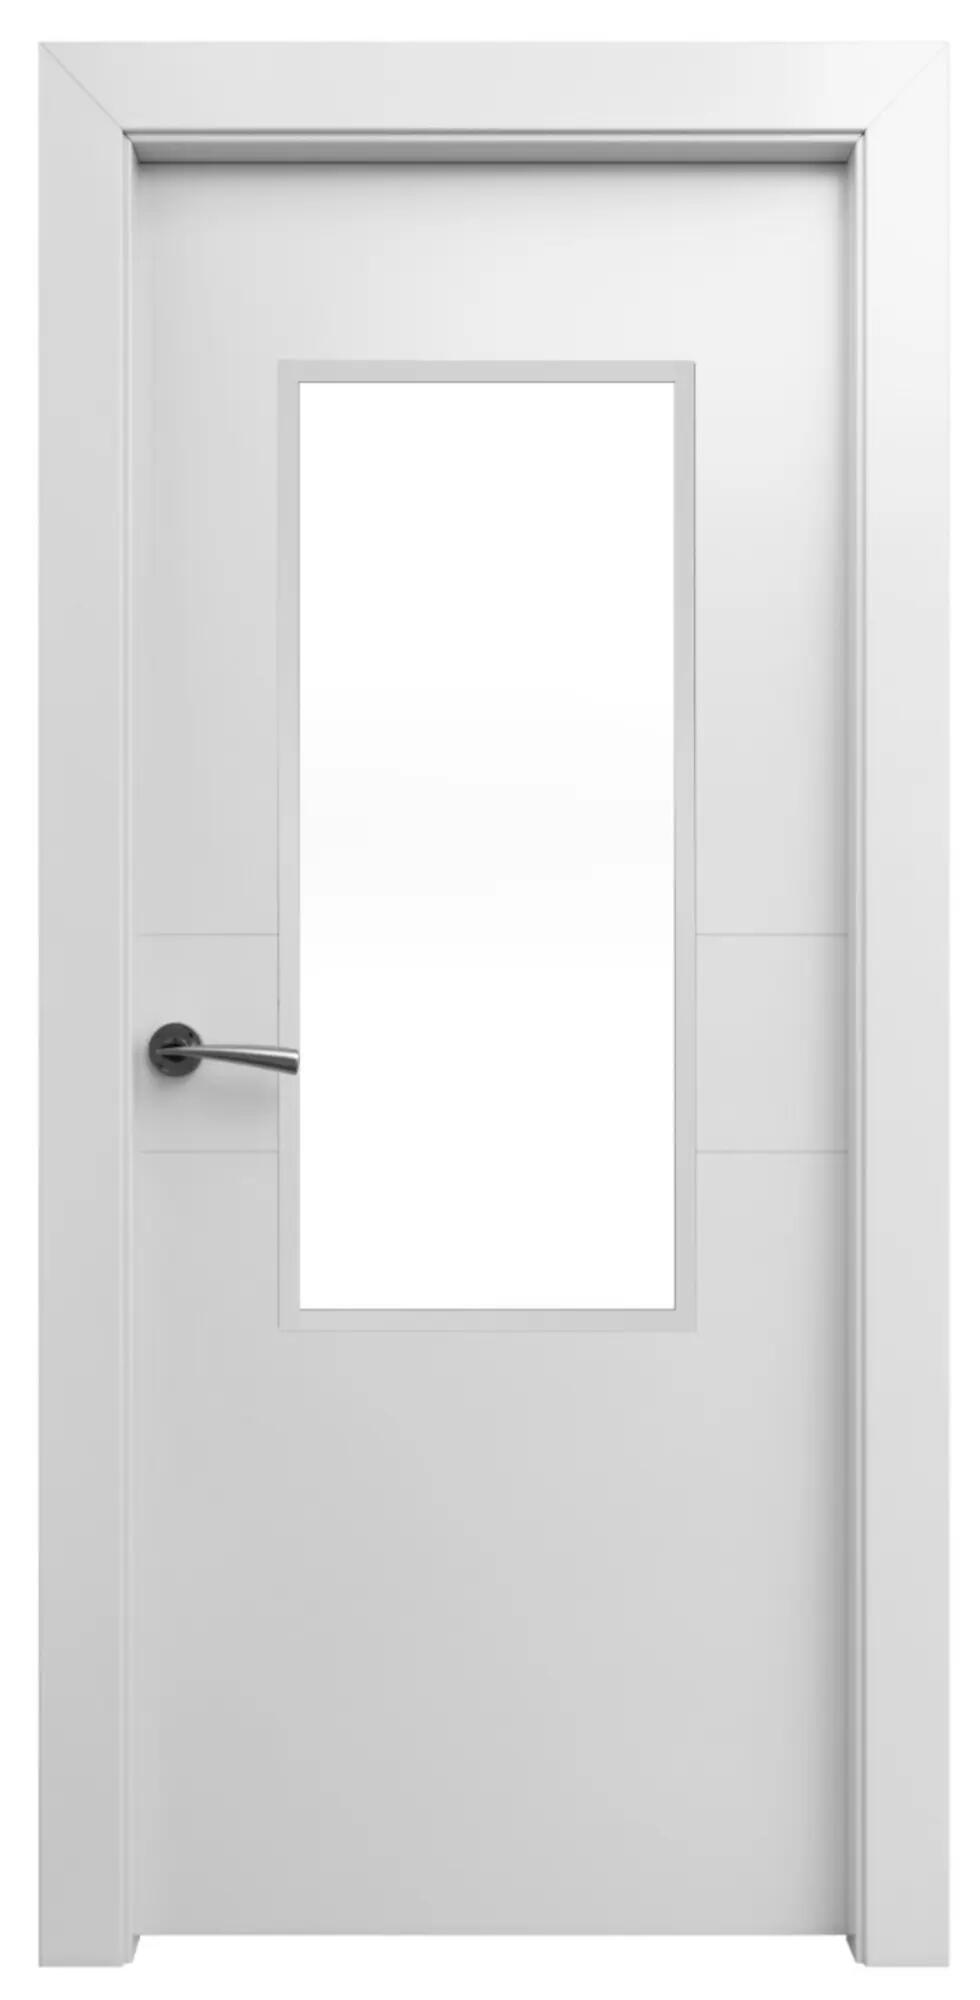 Puerta abatible vilna blanca apertura dcha de 72,5 cm